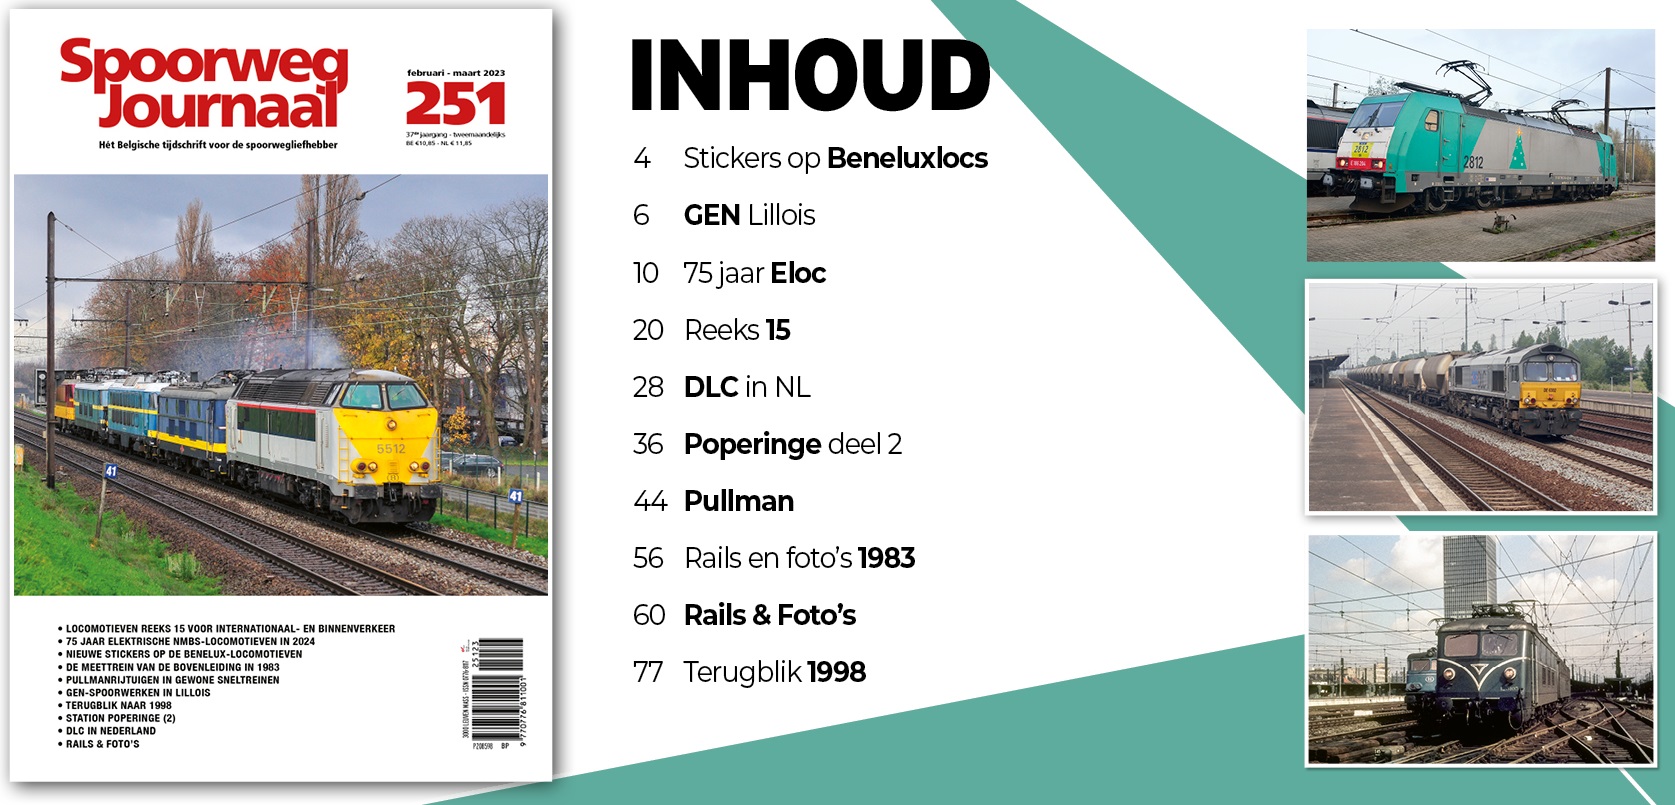 Spoorweg Journal 251 Het Belgisch Tijdschrift voor de spoorwegliefhebber - niederländische/flämische Ausgabe